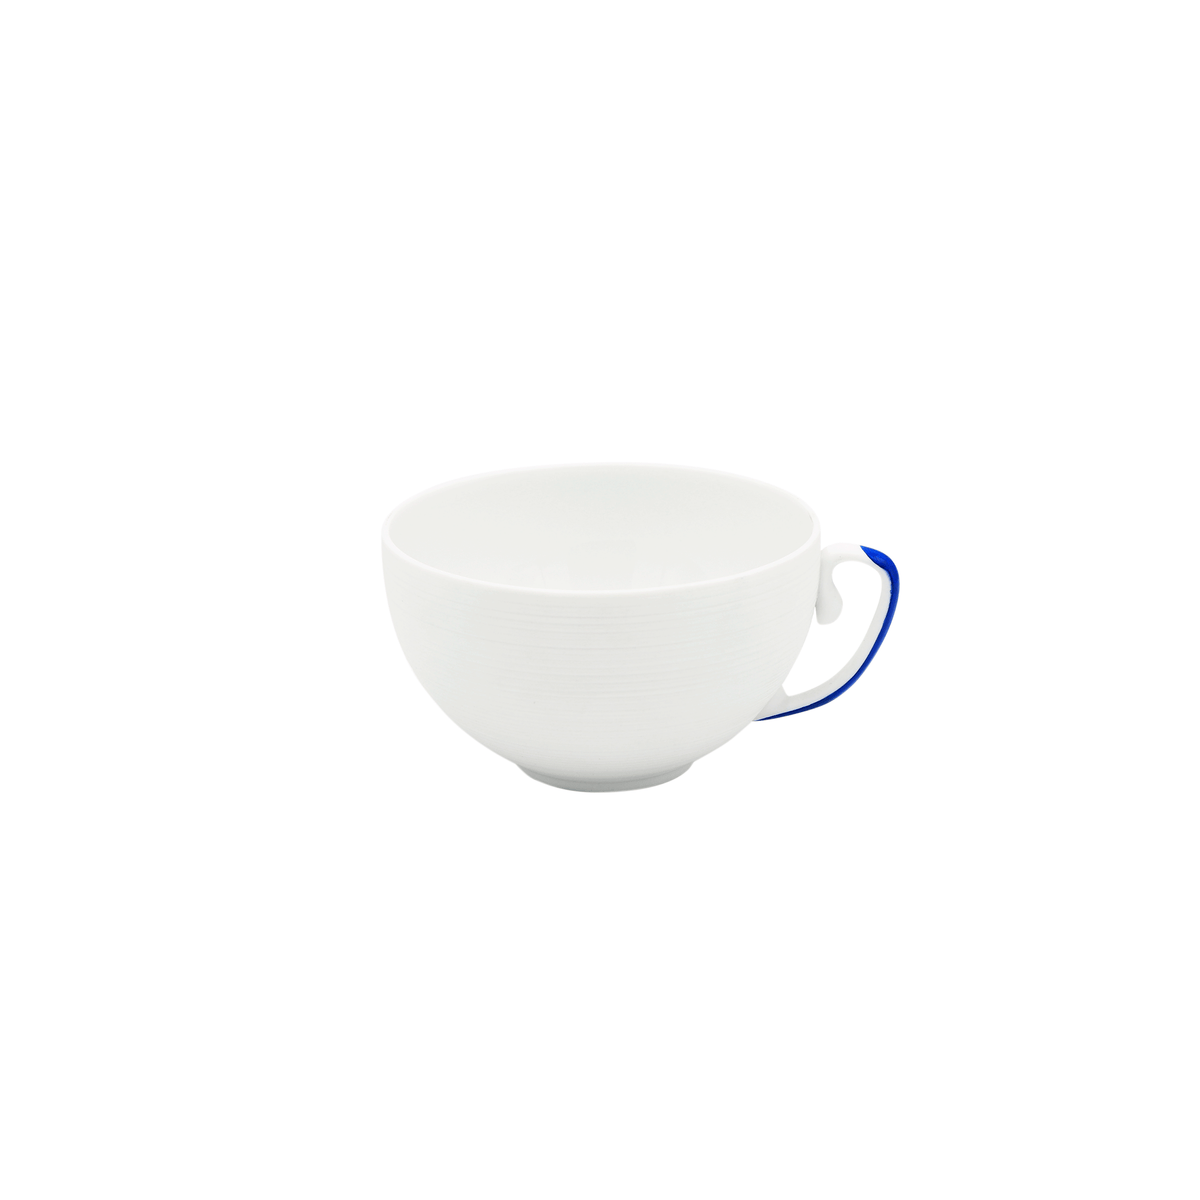 HEMISPHERE Royal Blue - Tea set (cup & saucer)